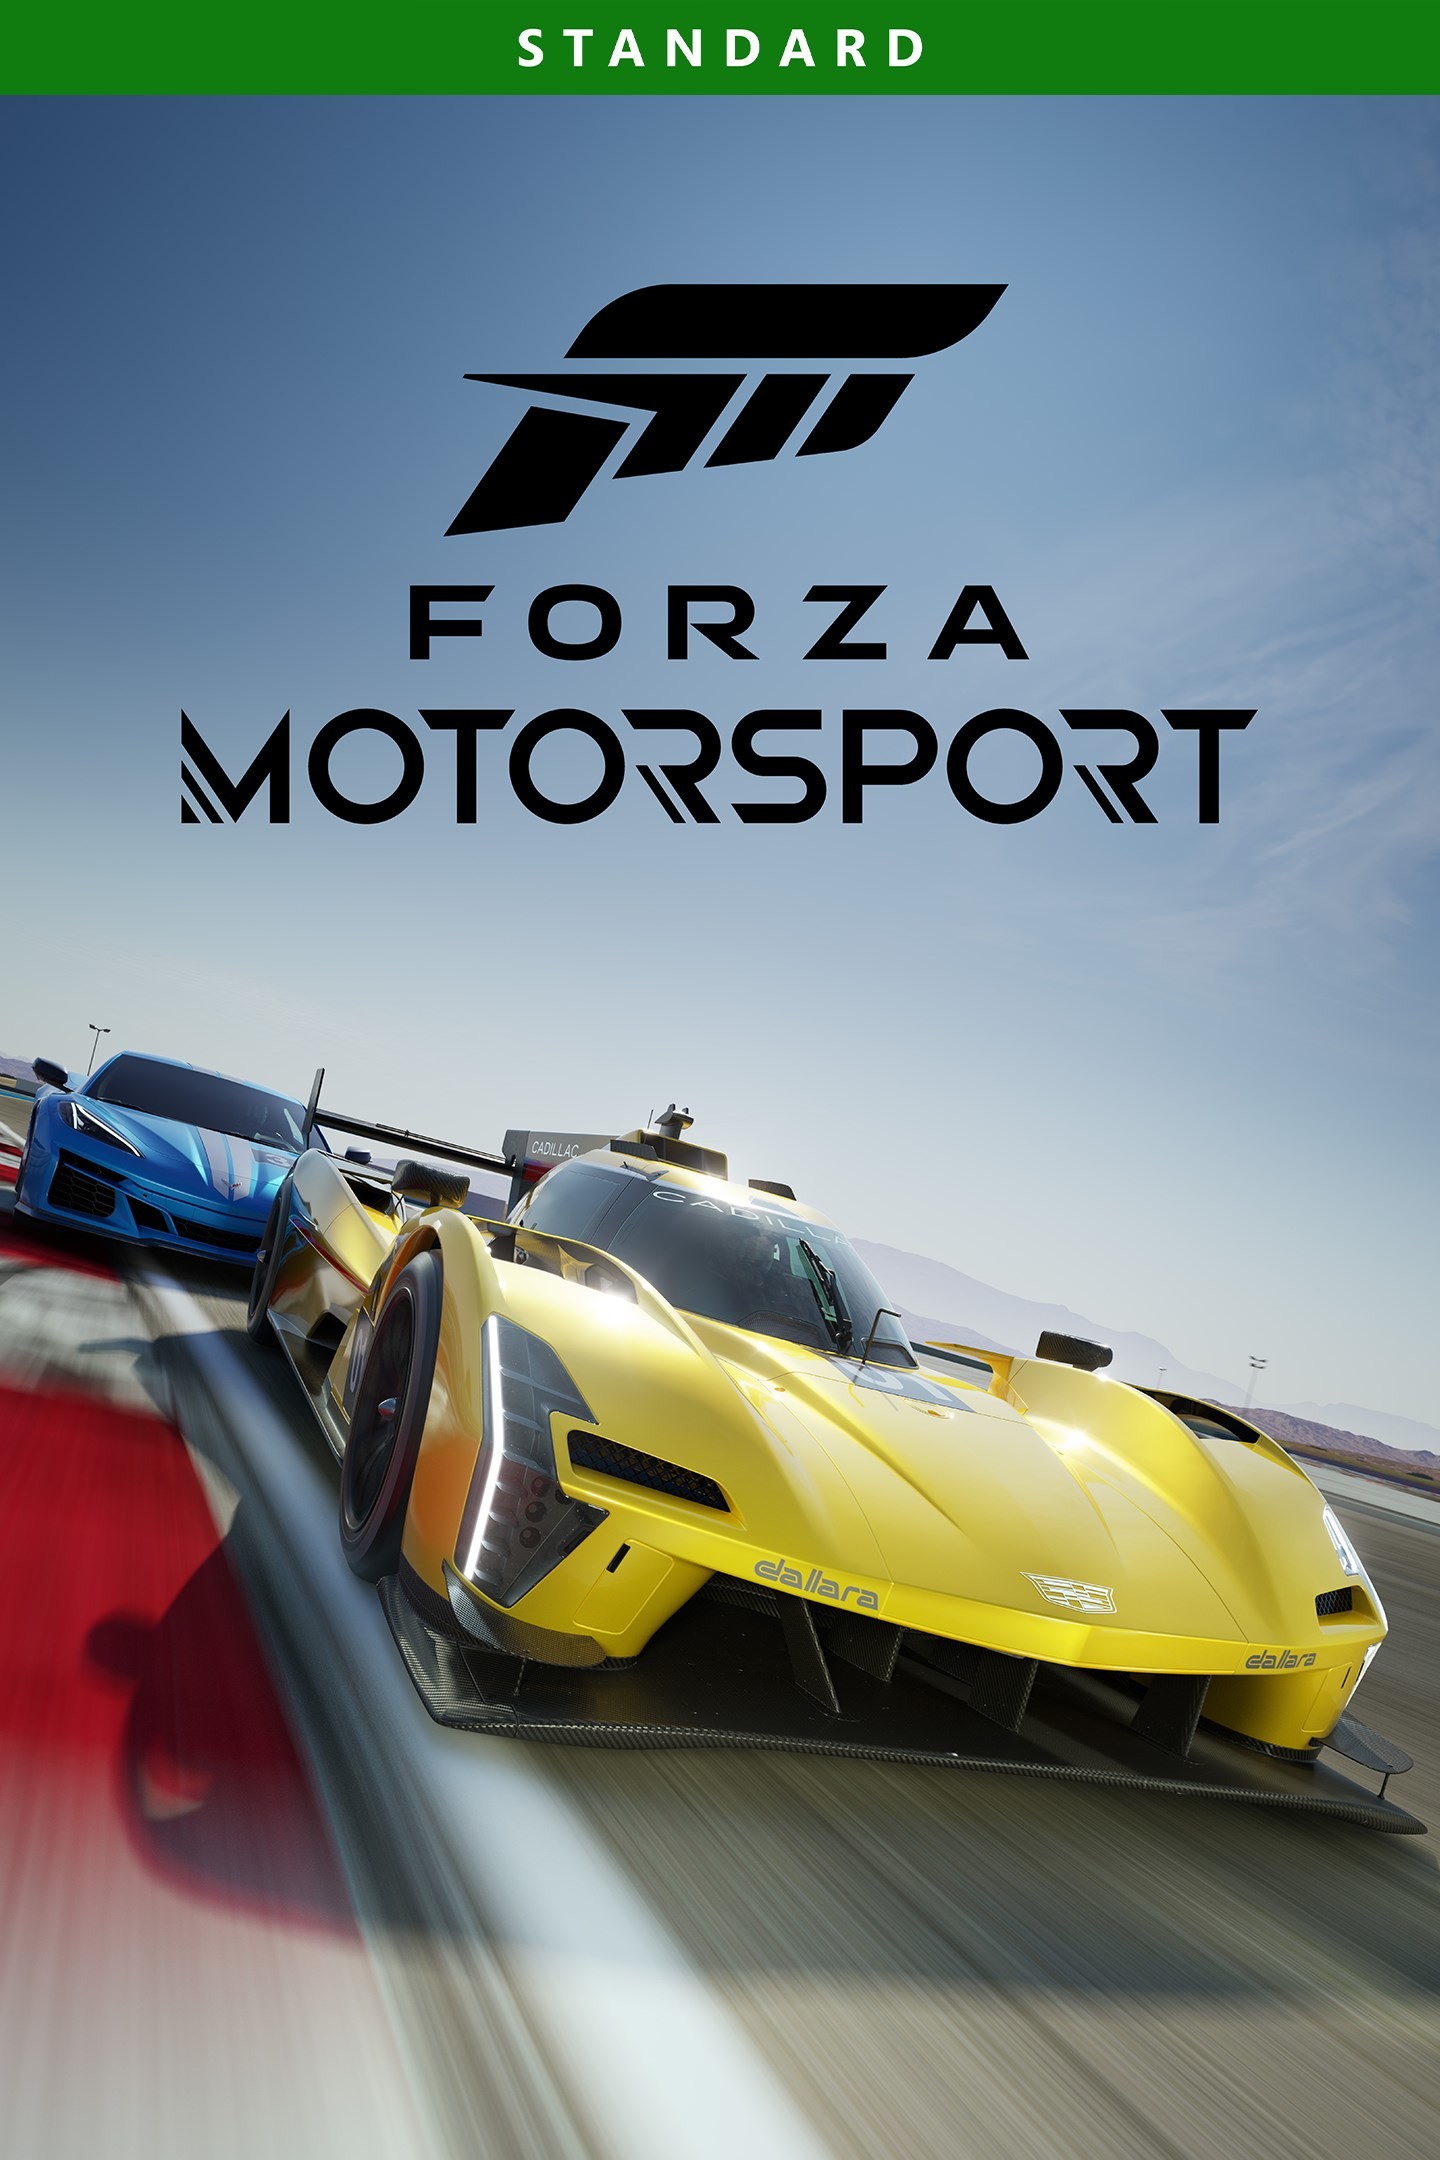 Forza Motorsport - Sans maîtrise, la puissance n’est rien.